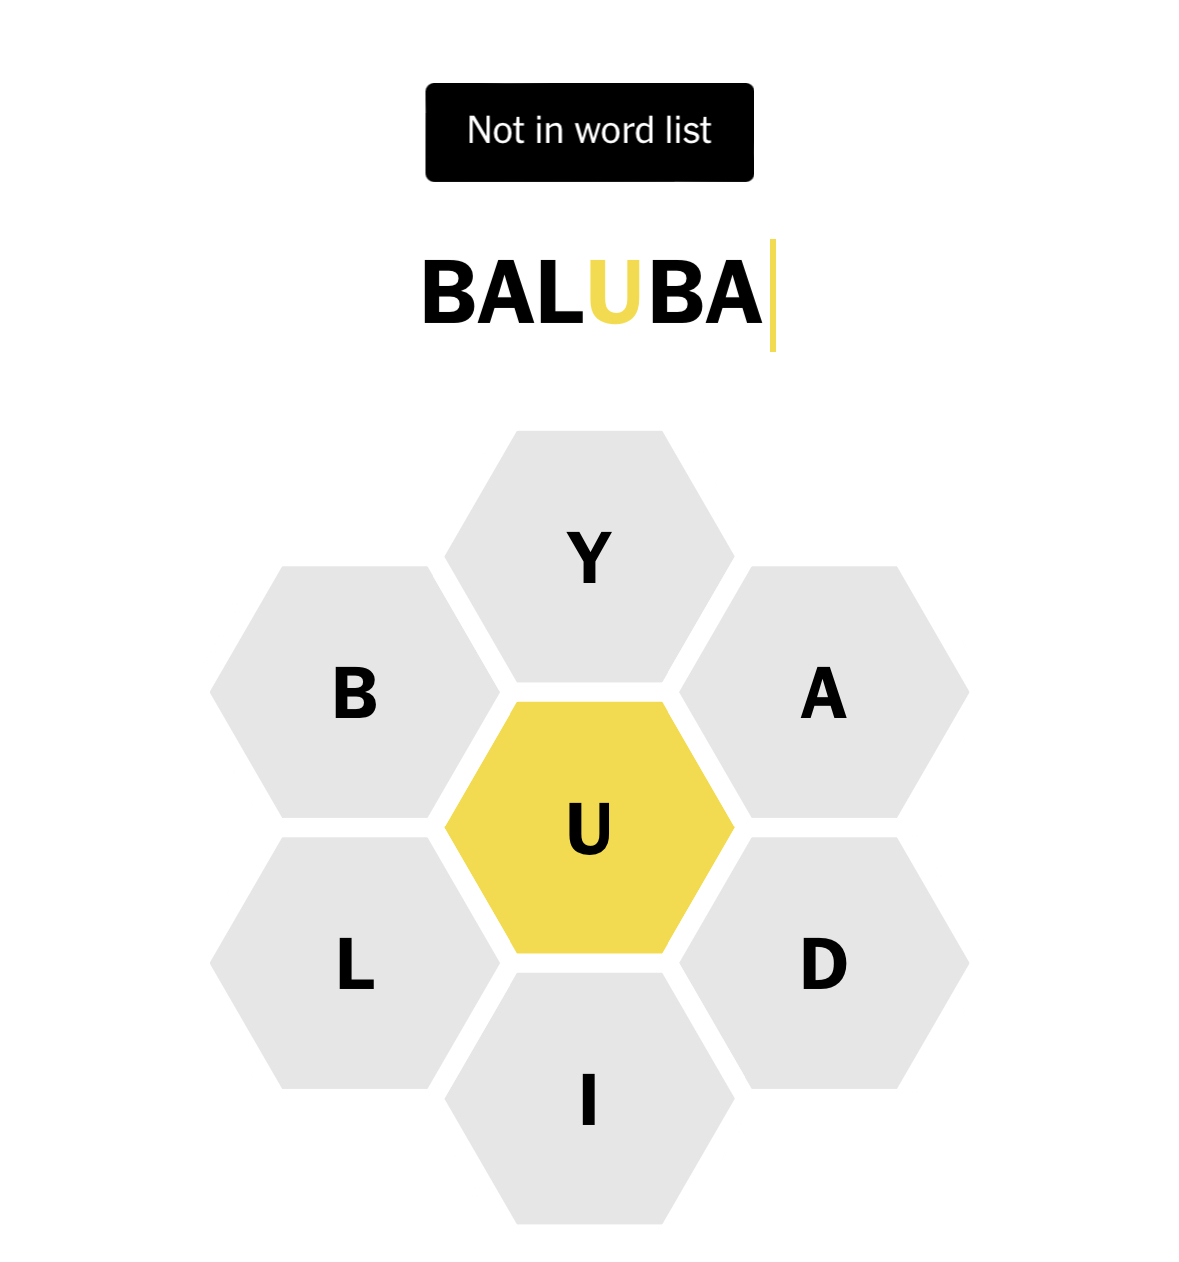 Spelling Bee med ordet Baluba som ikke funnet